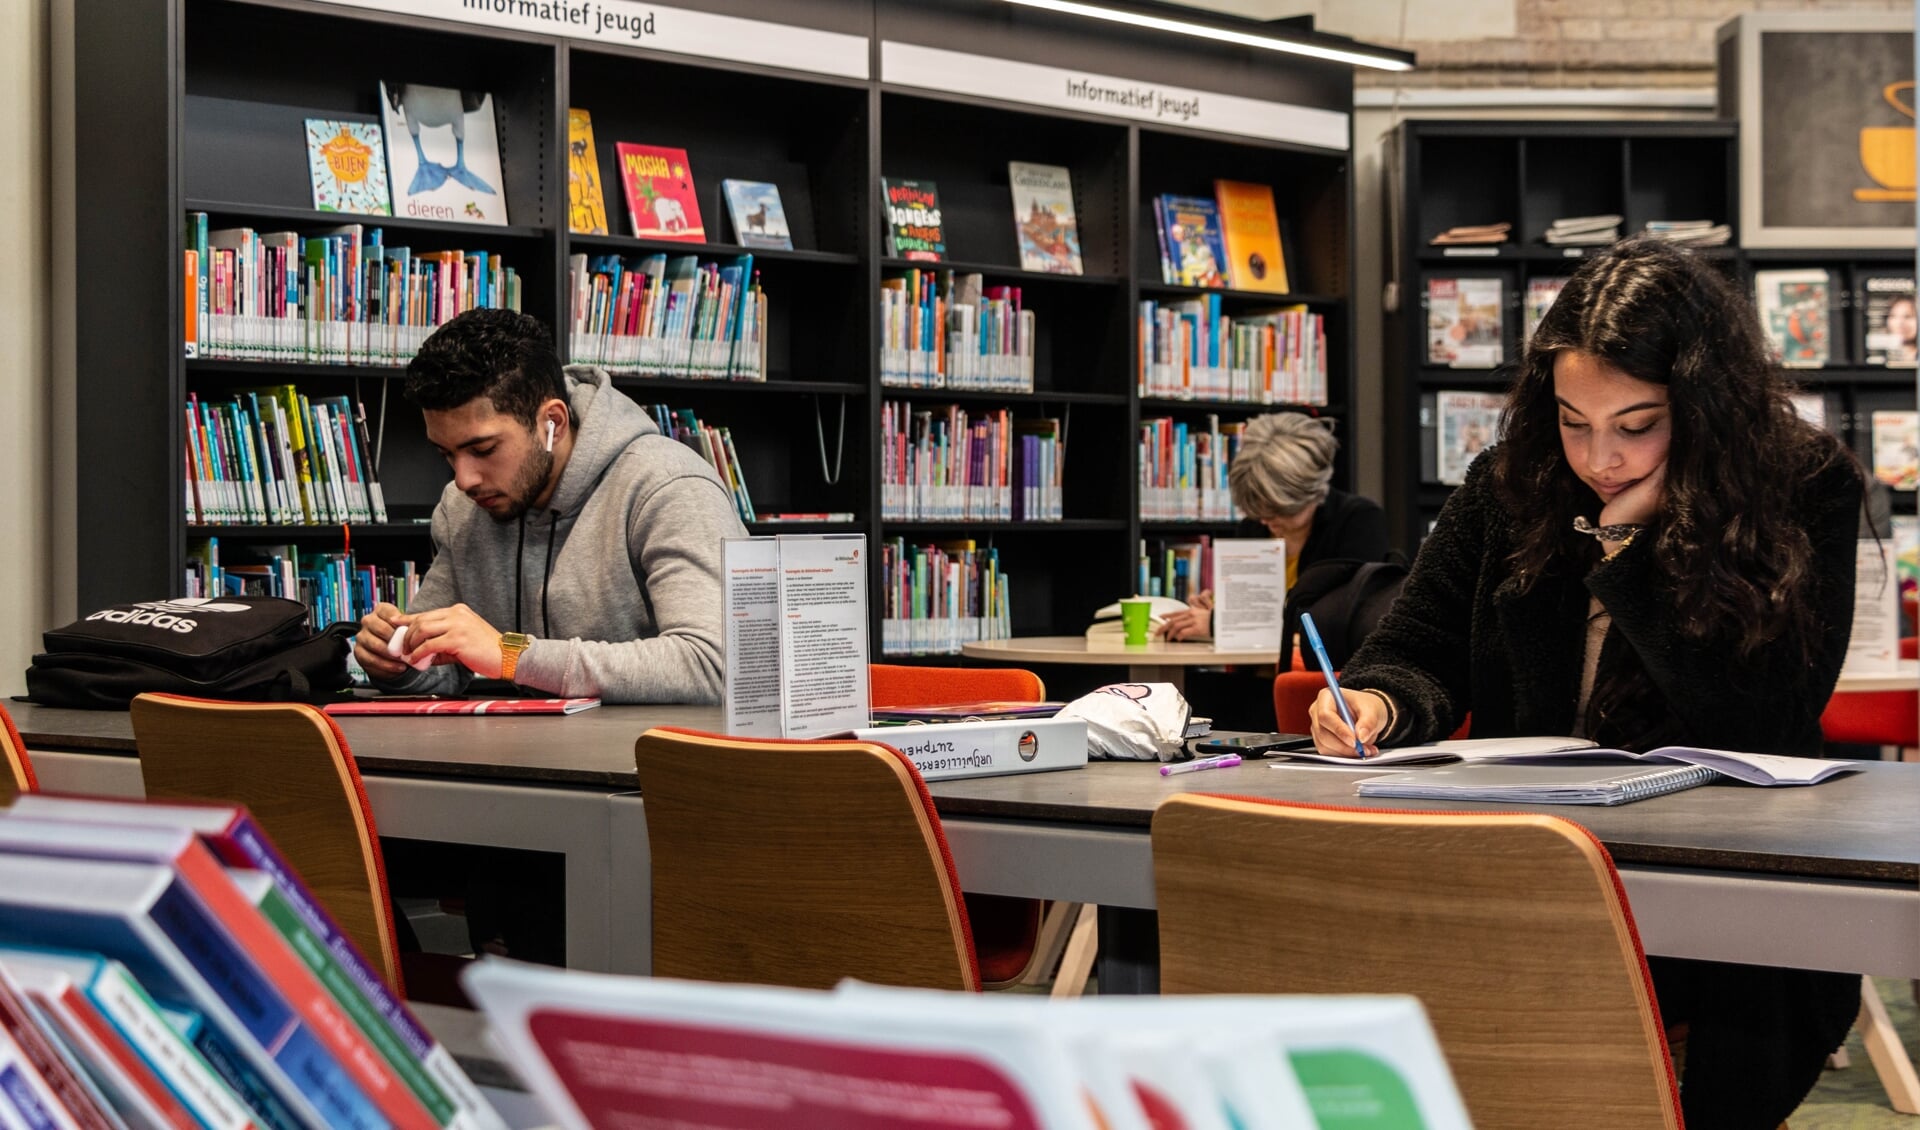 De bibliotheek biedt veel meer dan alleen de mogelijkheid om boeken te lenen een krant te lezen. Foto: Henk Derksen